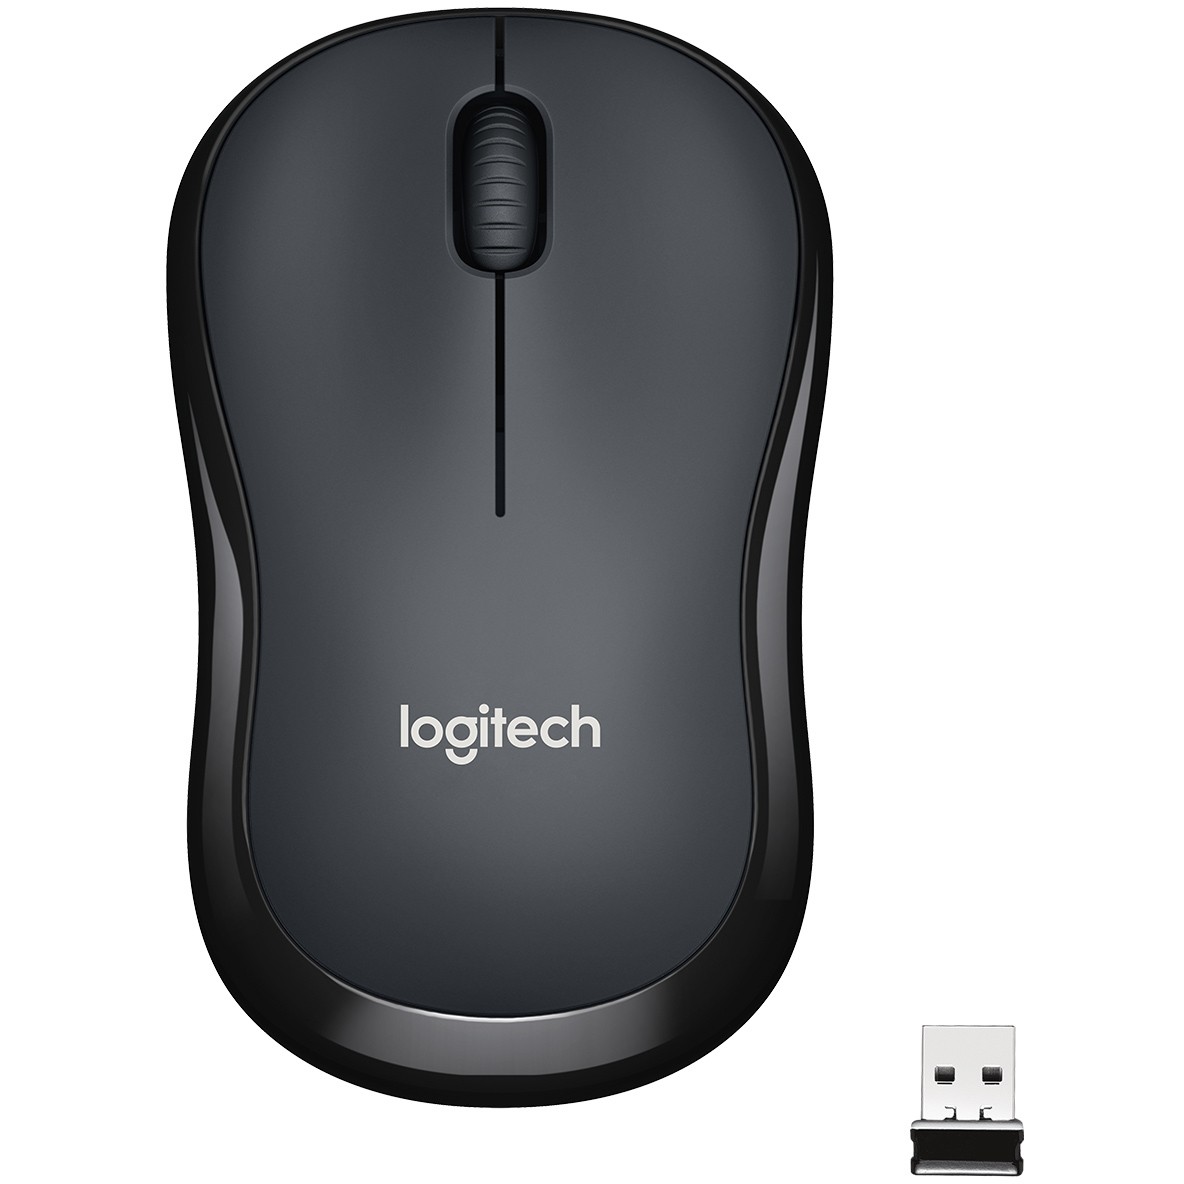 Logitech M220 Silent mouse